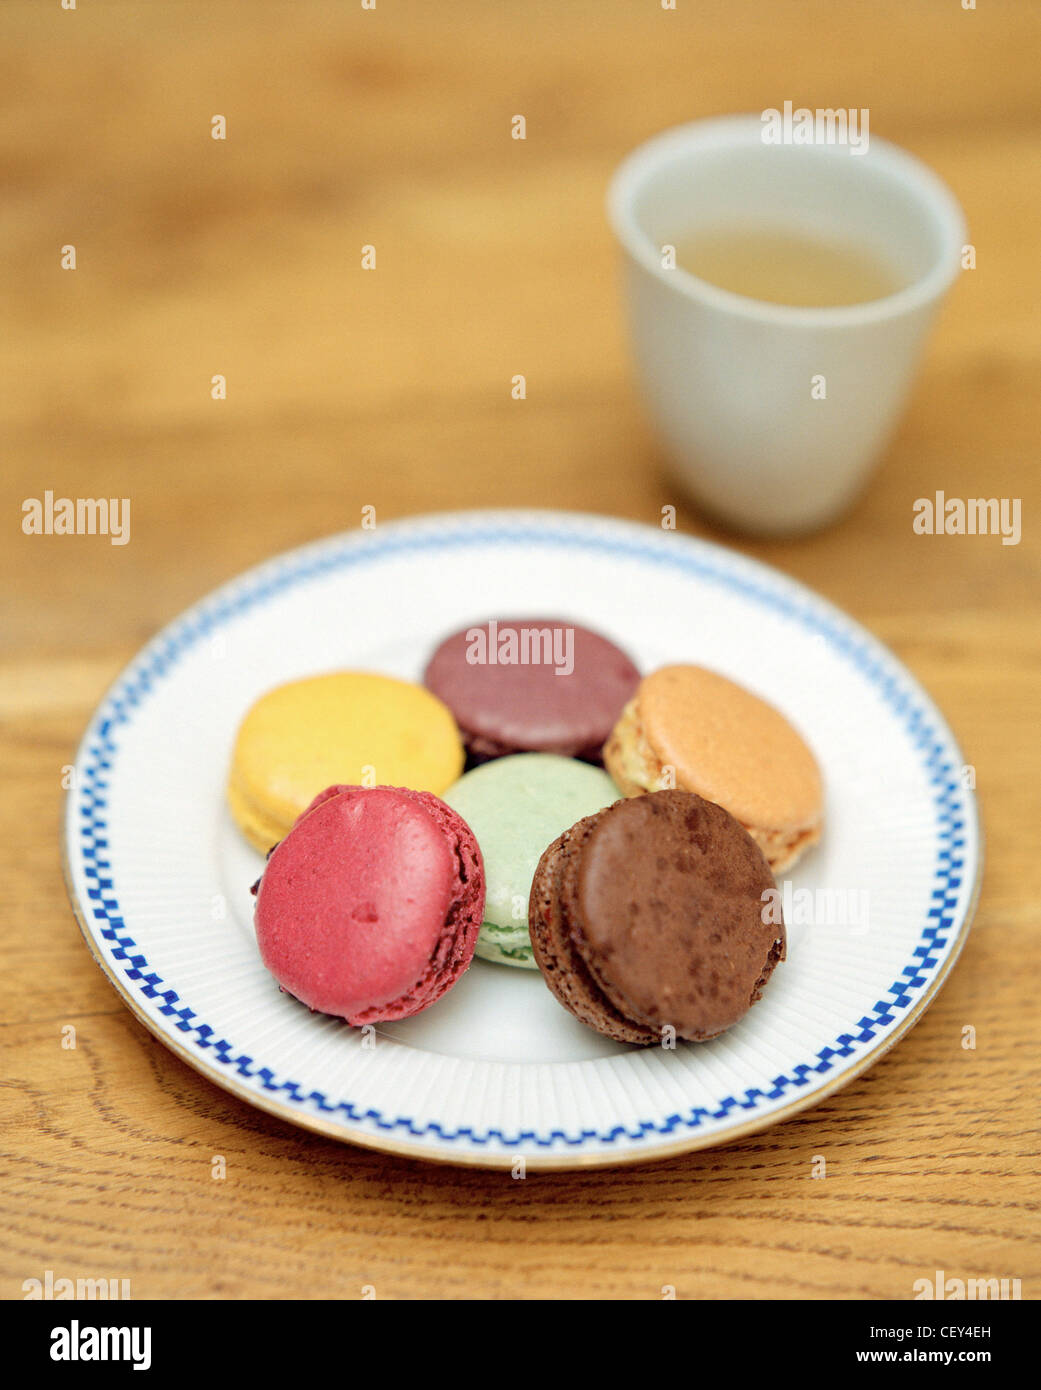 Macarons multicolor en la placa con una pequeña taza de té en el fondo Foto de stock